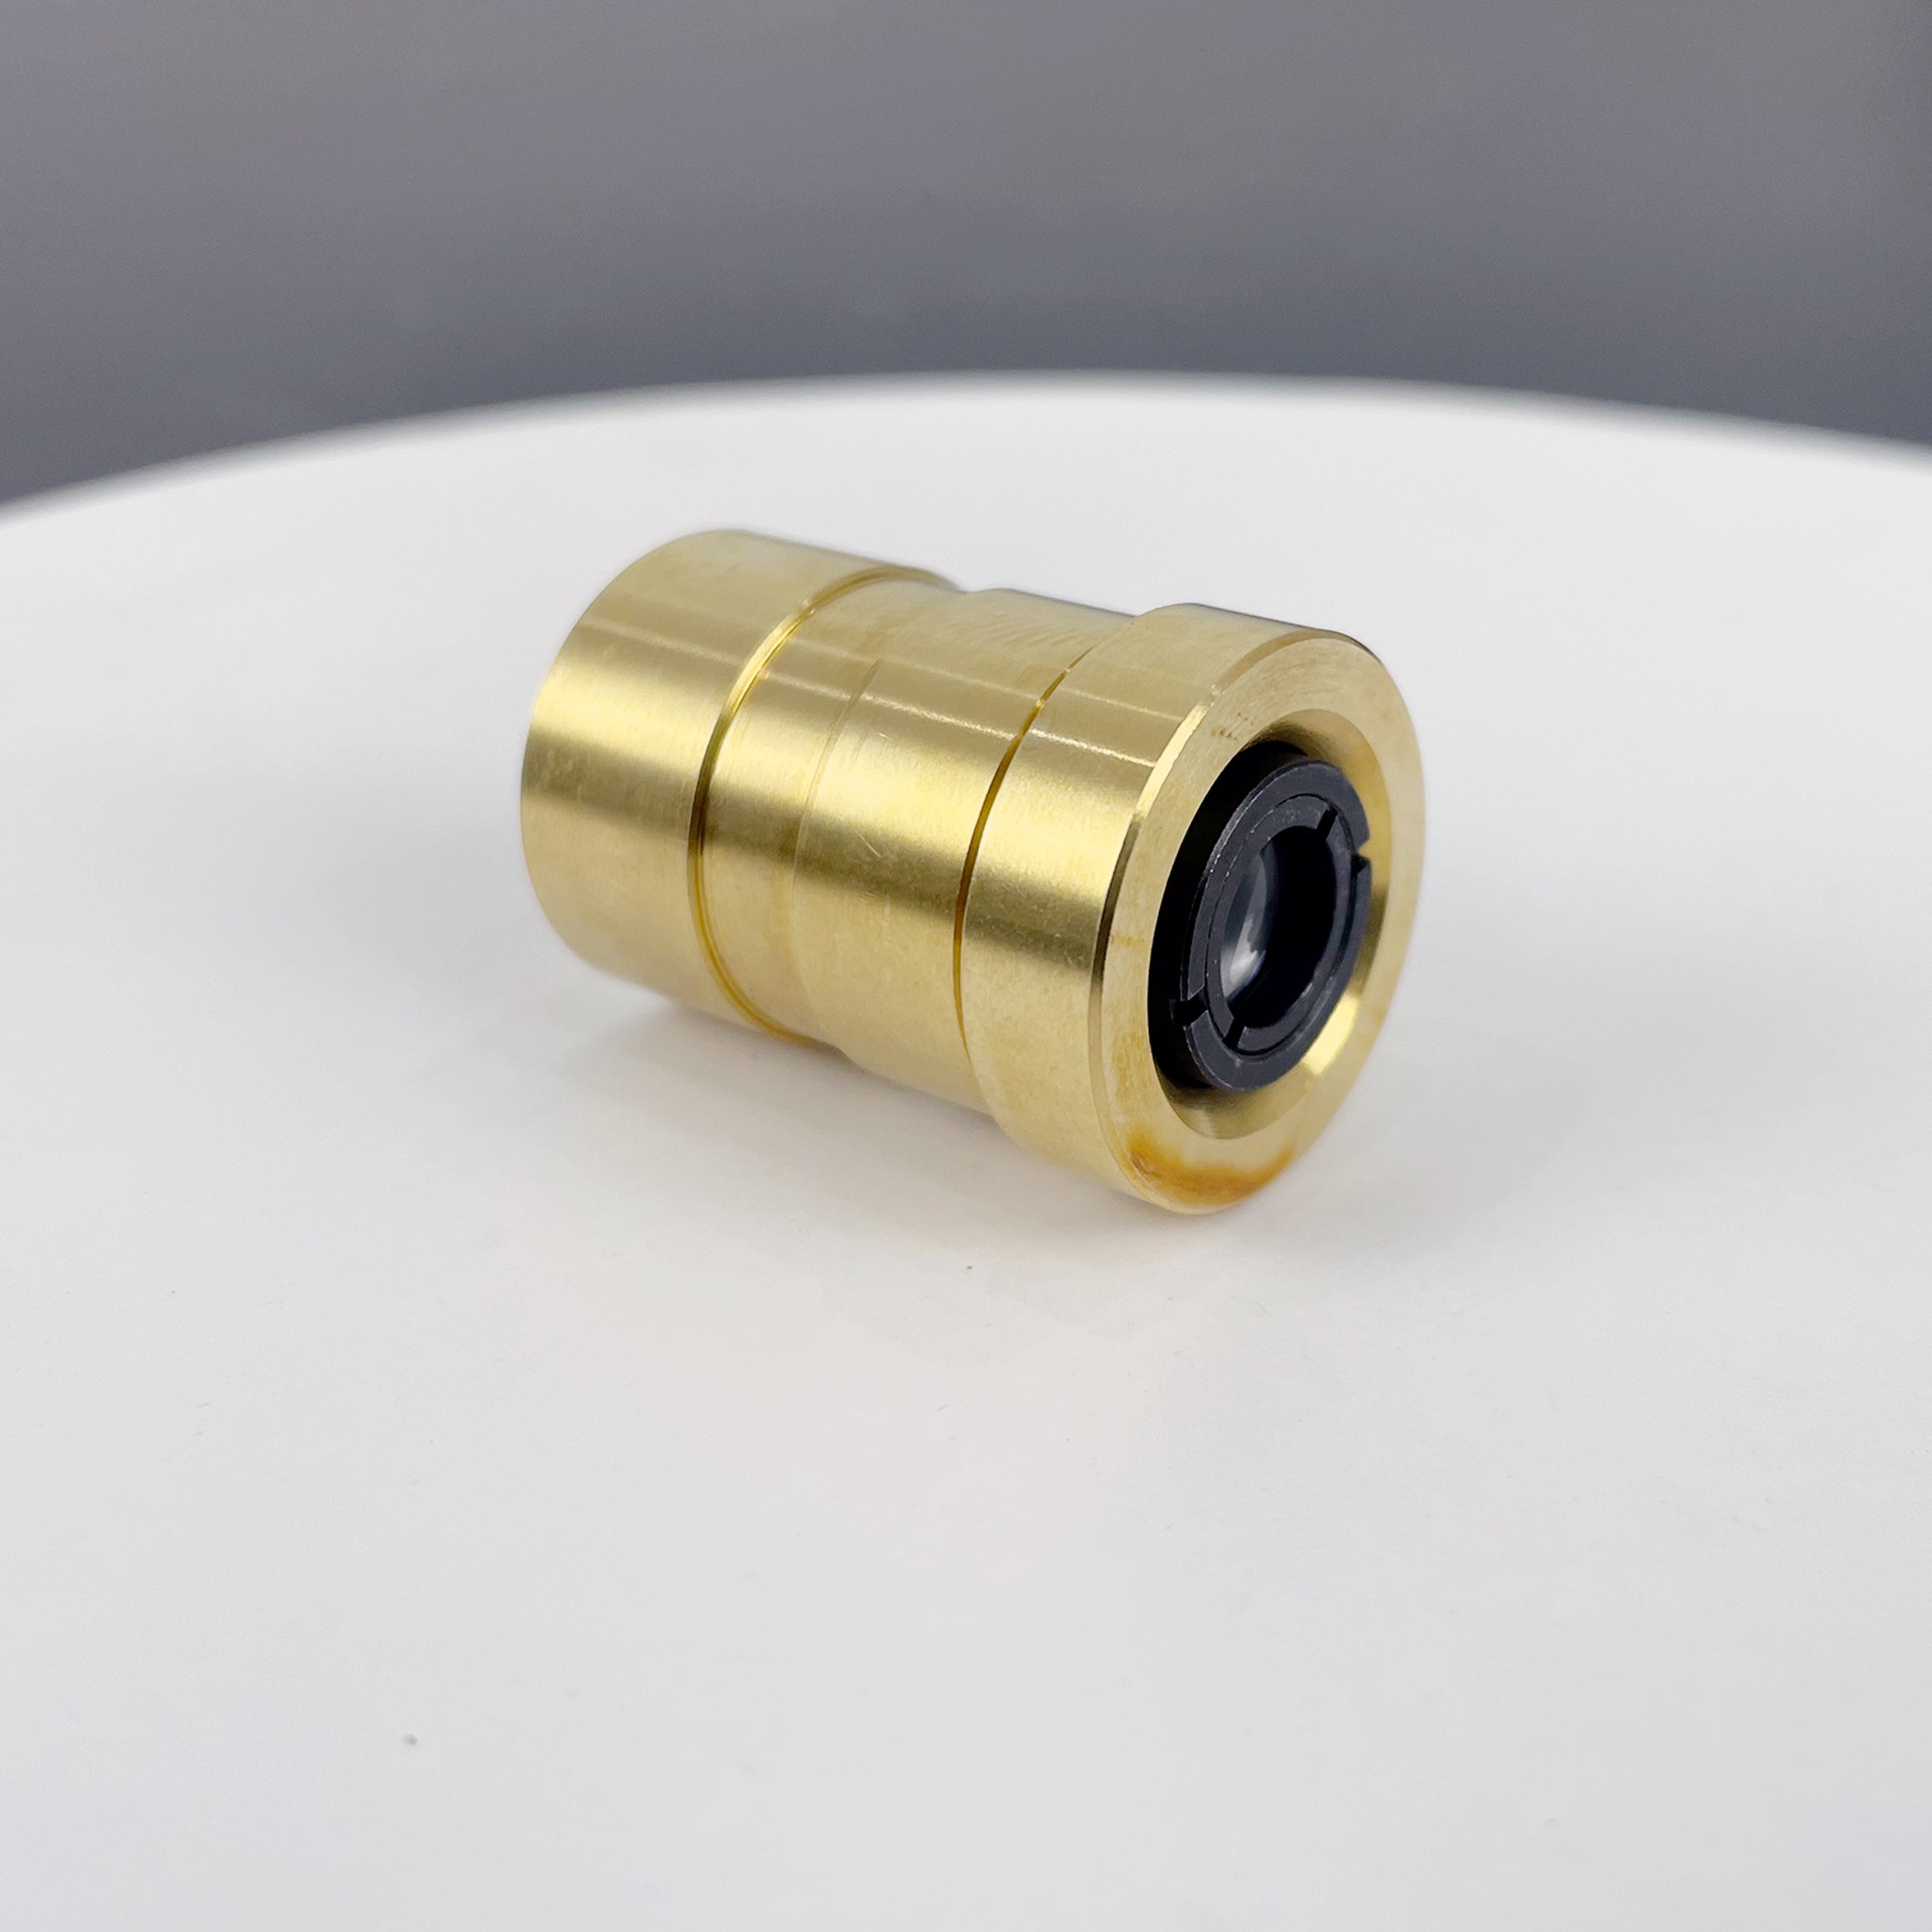 Agilent Repair Parts-Large Lens Assembly Kit